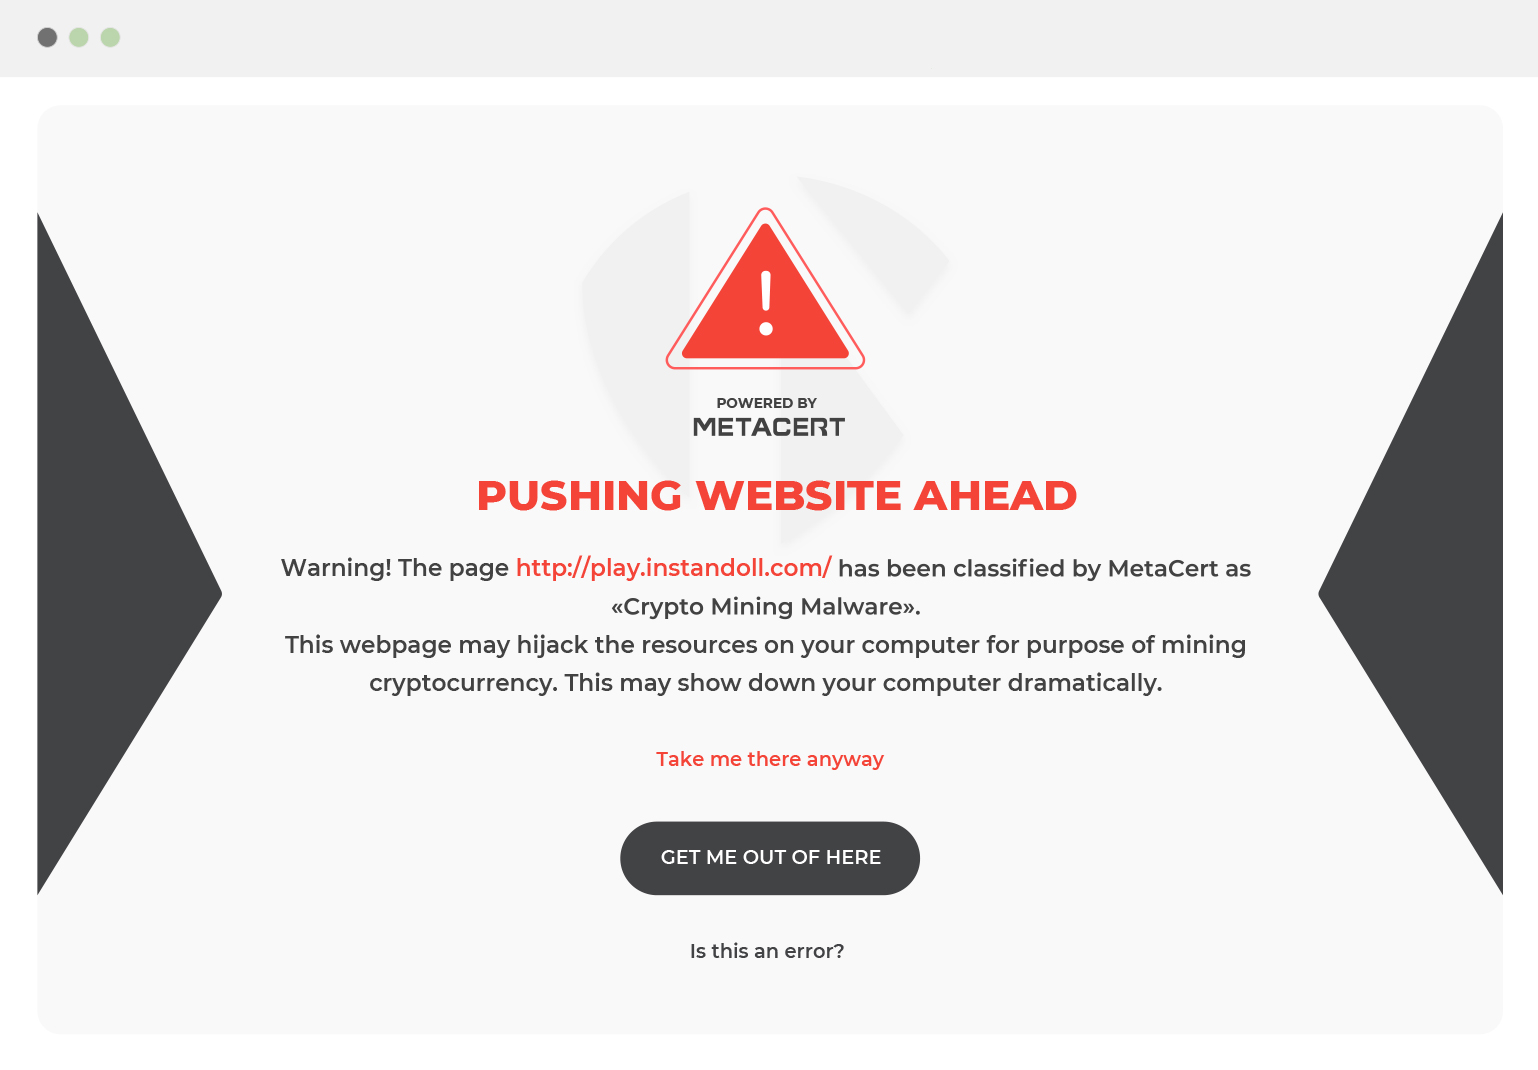 Warning phishing website ahead